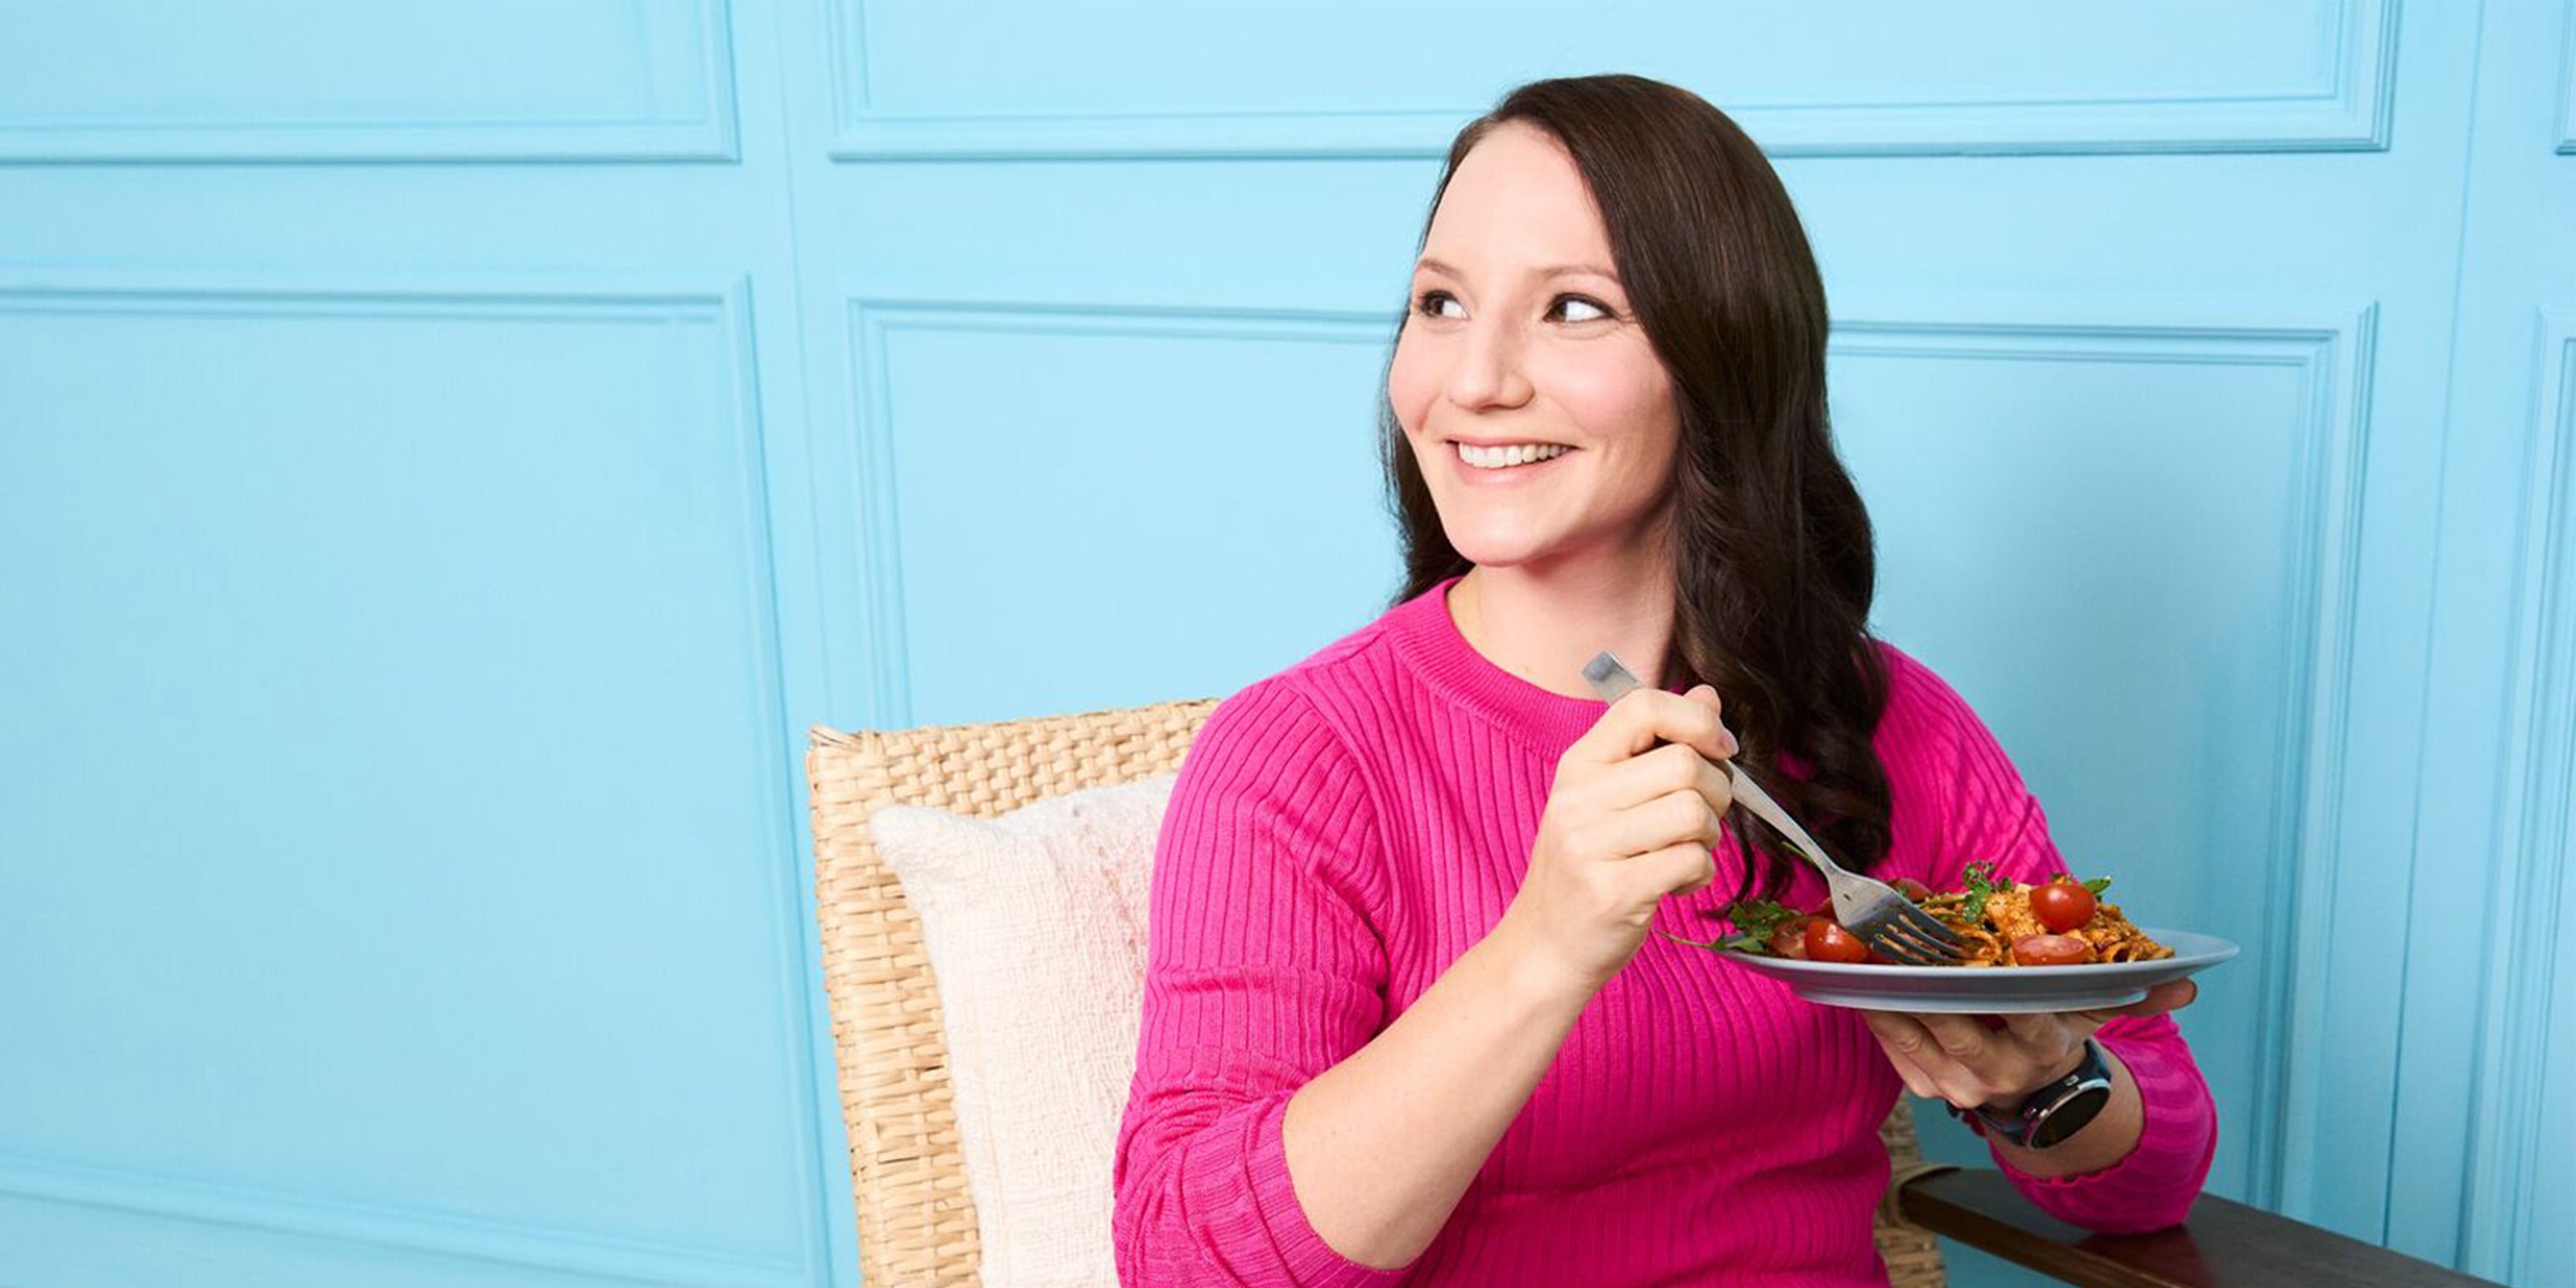 Junge Frau mit braunen Haaren und pinkem Pullover sitzt mit Pastateller vor blauer Wand.